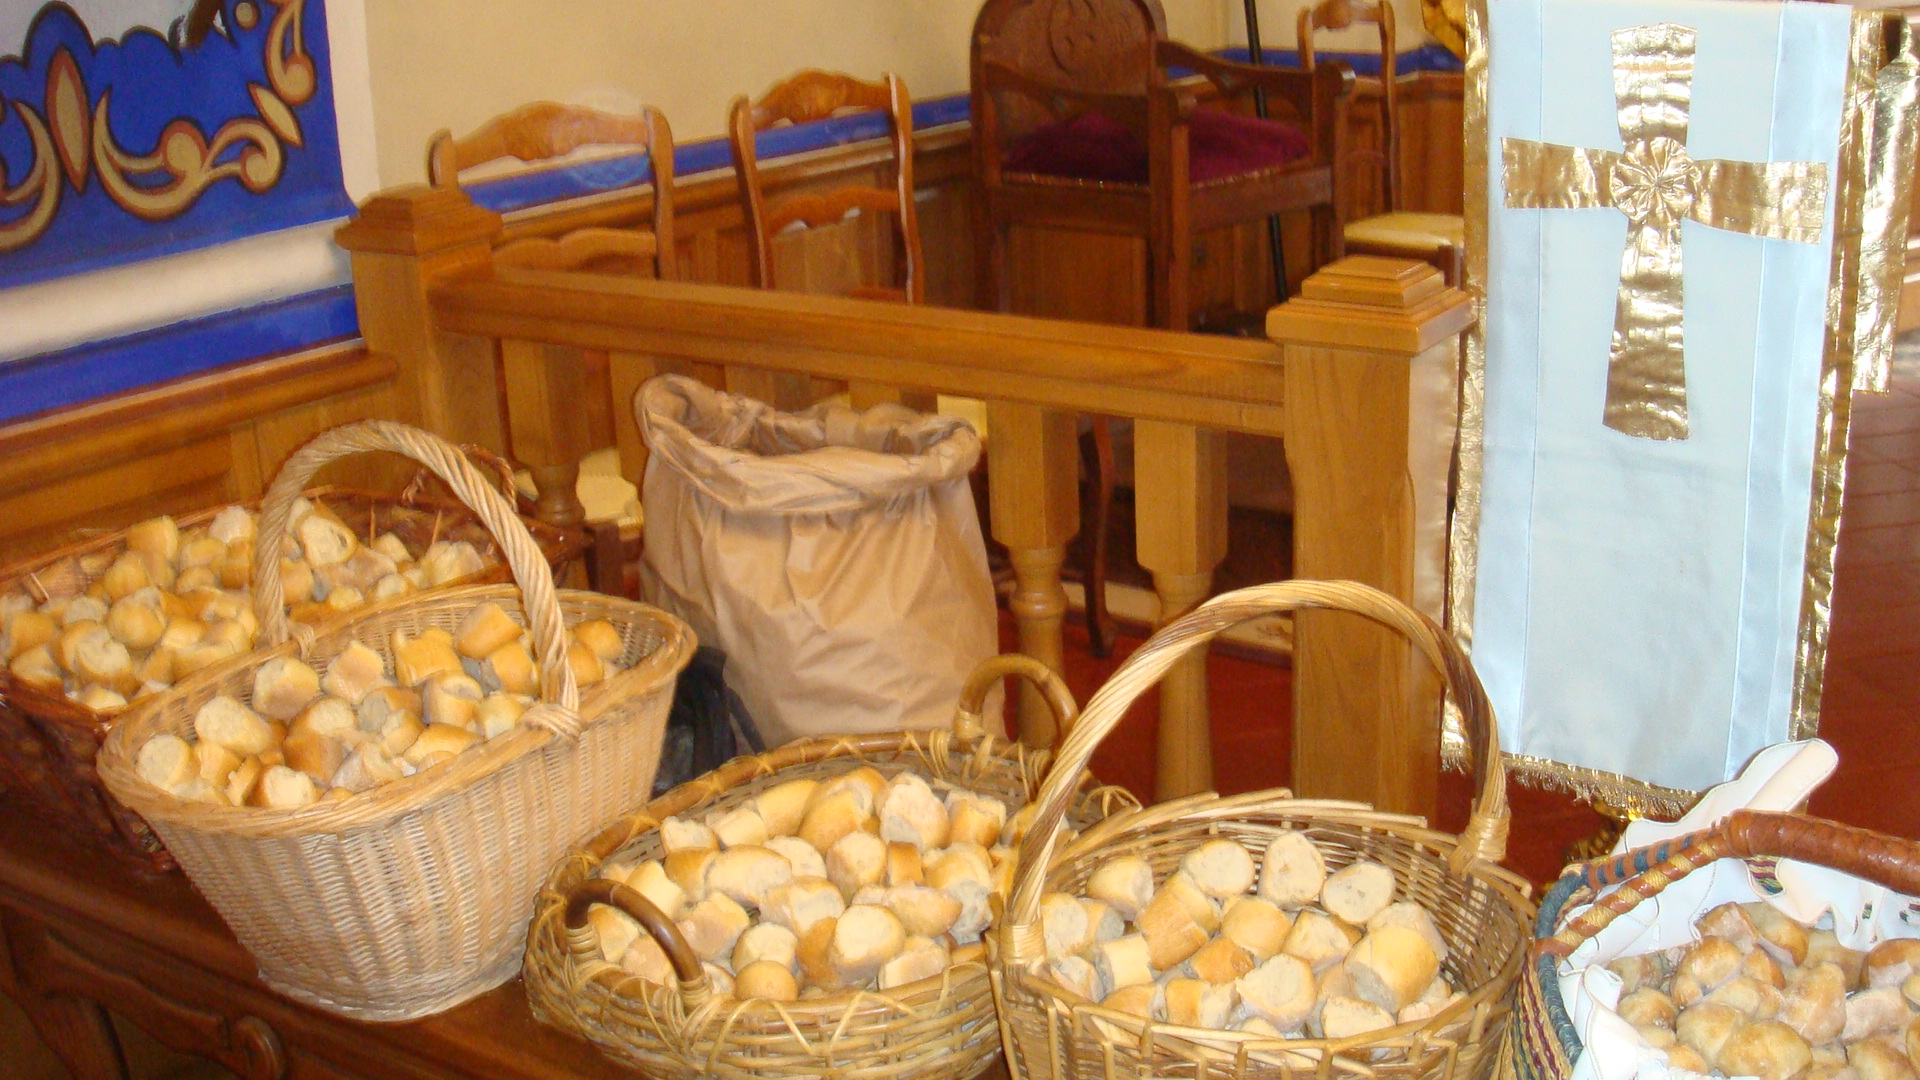 Incarnant le sens du partage prôné par Saint Antoine, les petits pains bénis ont été distribués aux fidèles. (Photo SG).